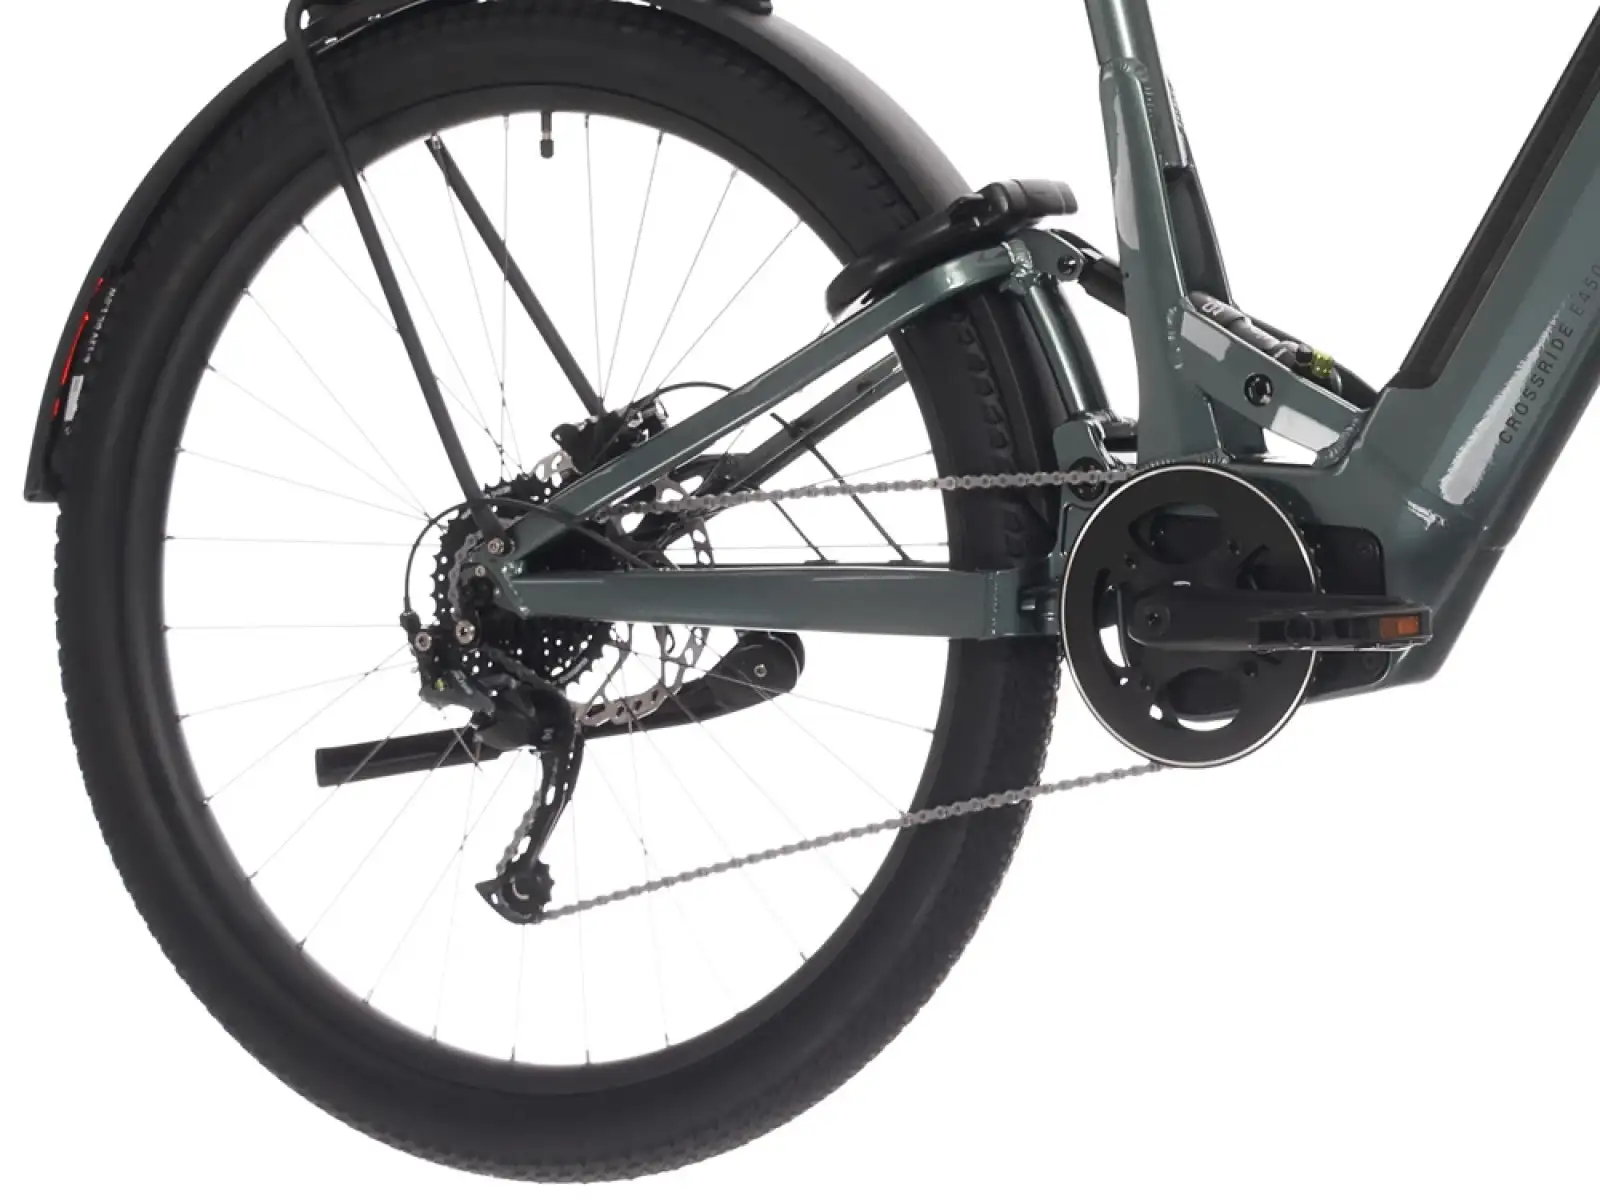 Rock Machine Crossride e450 celoodpružený e-bike s nízkym zdvihom